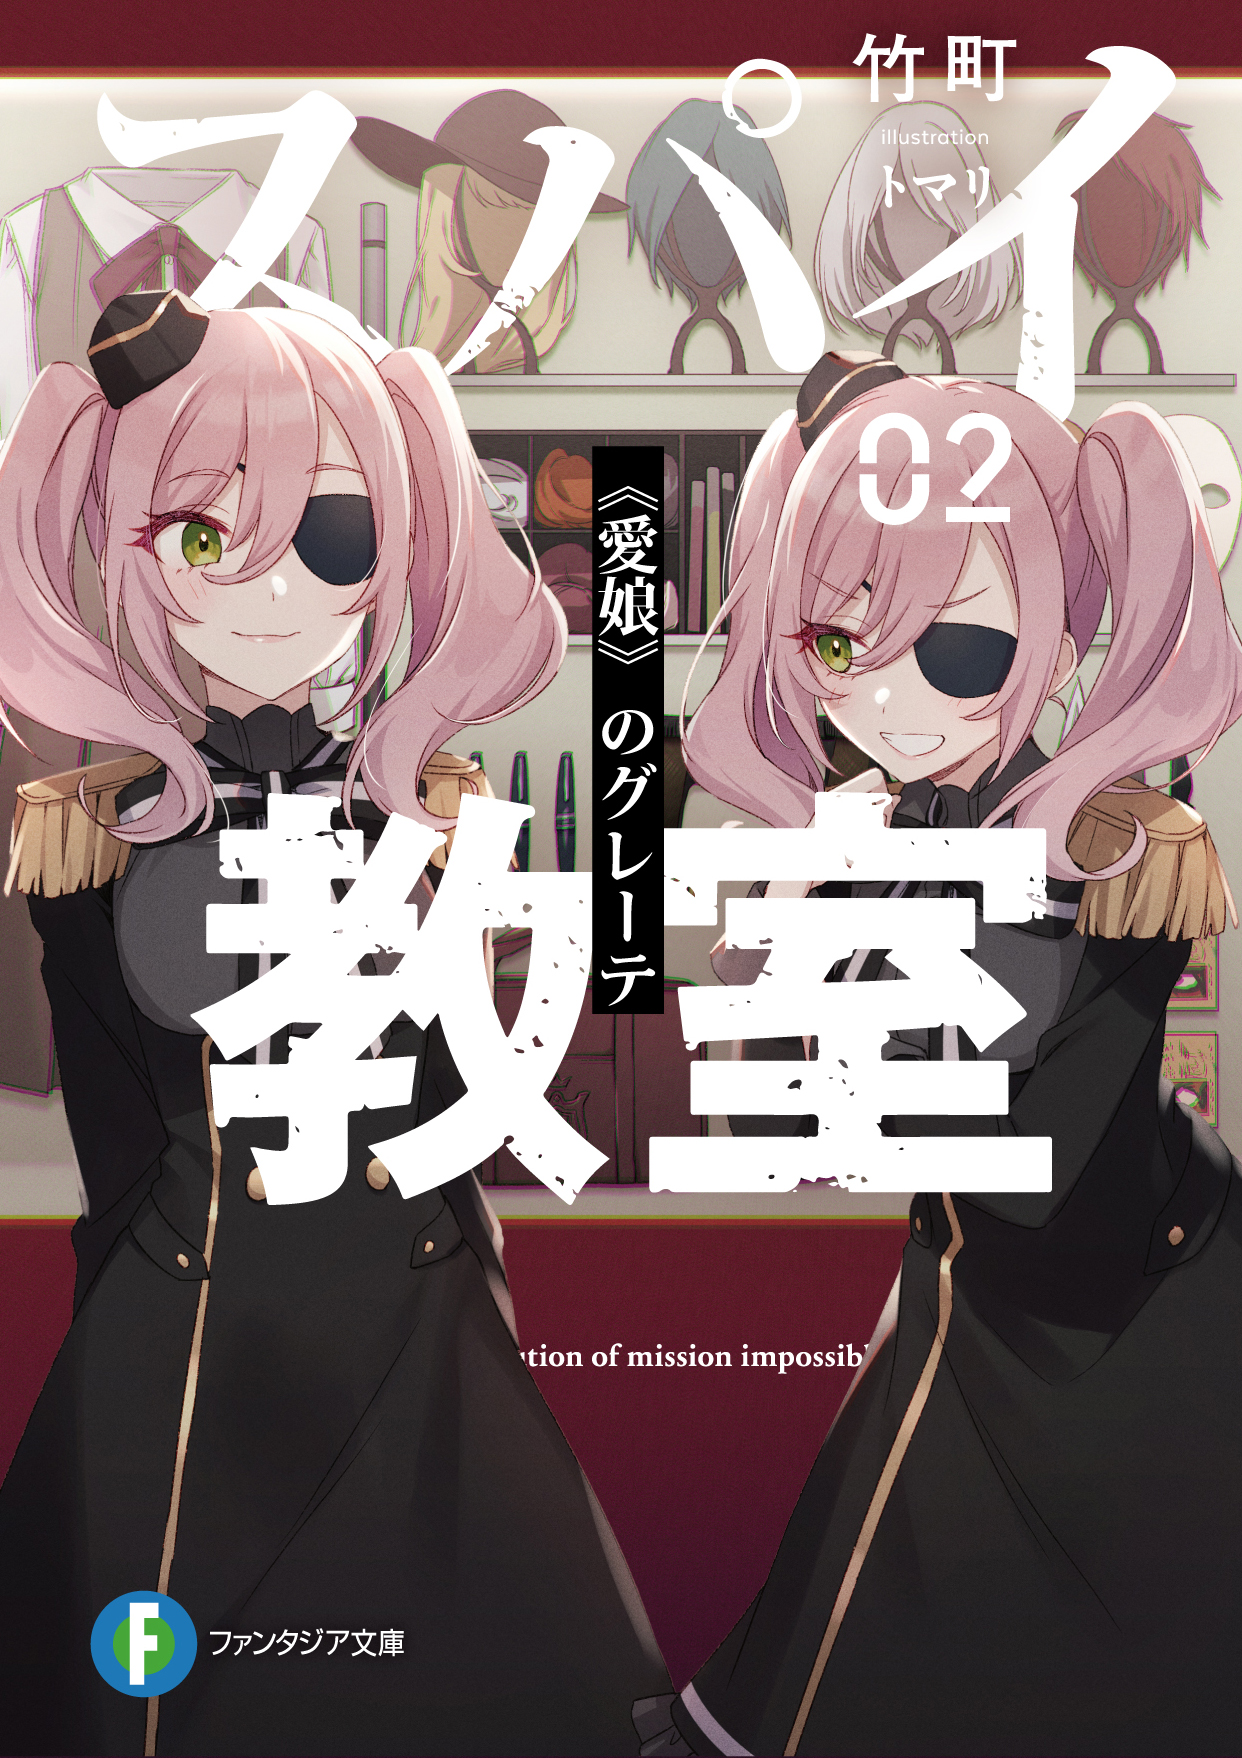 Spy Kyoushitsu (Spy Classroom)  Light Novel - Pictures 